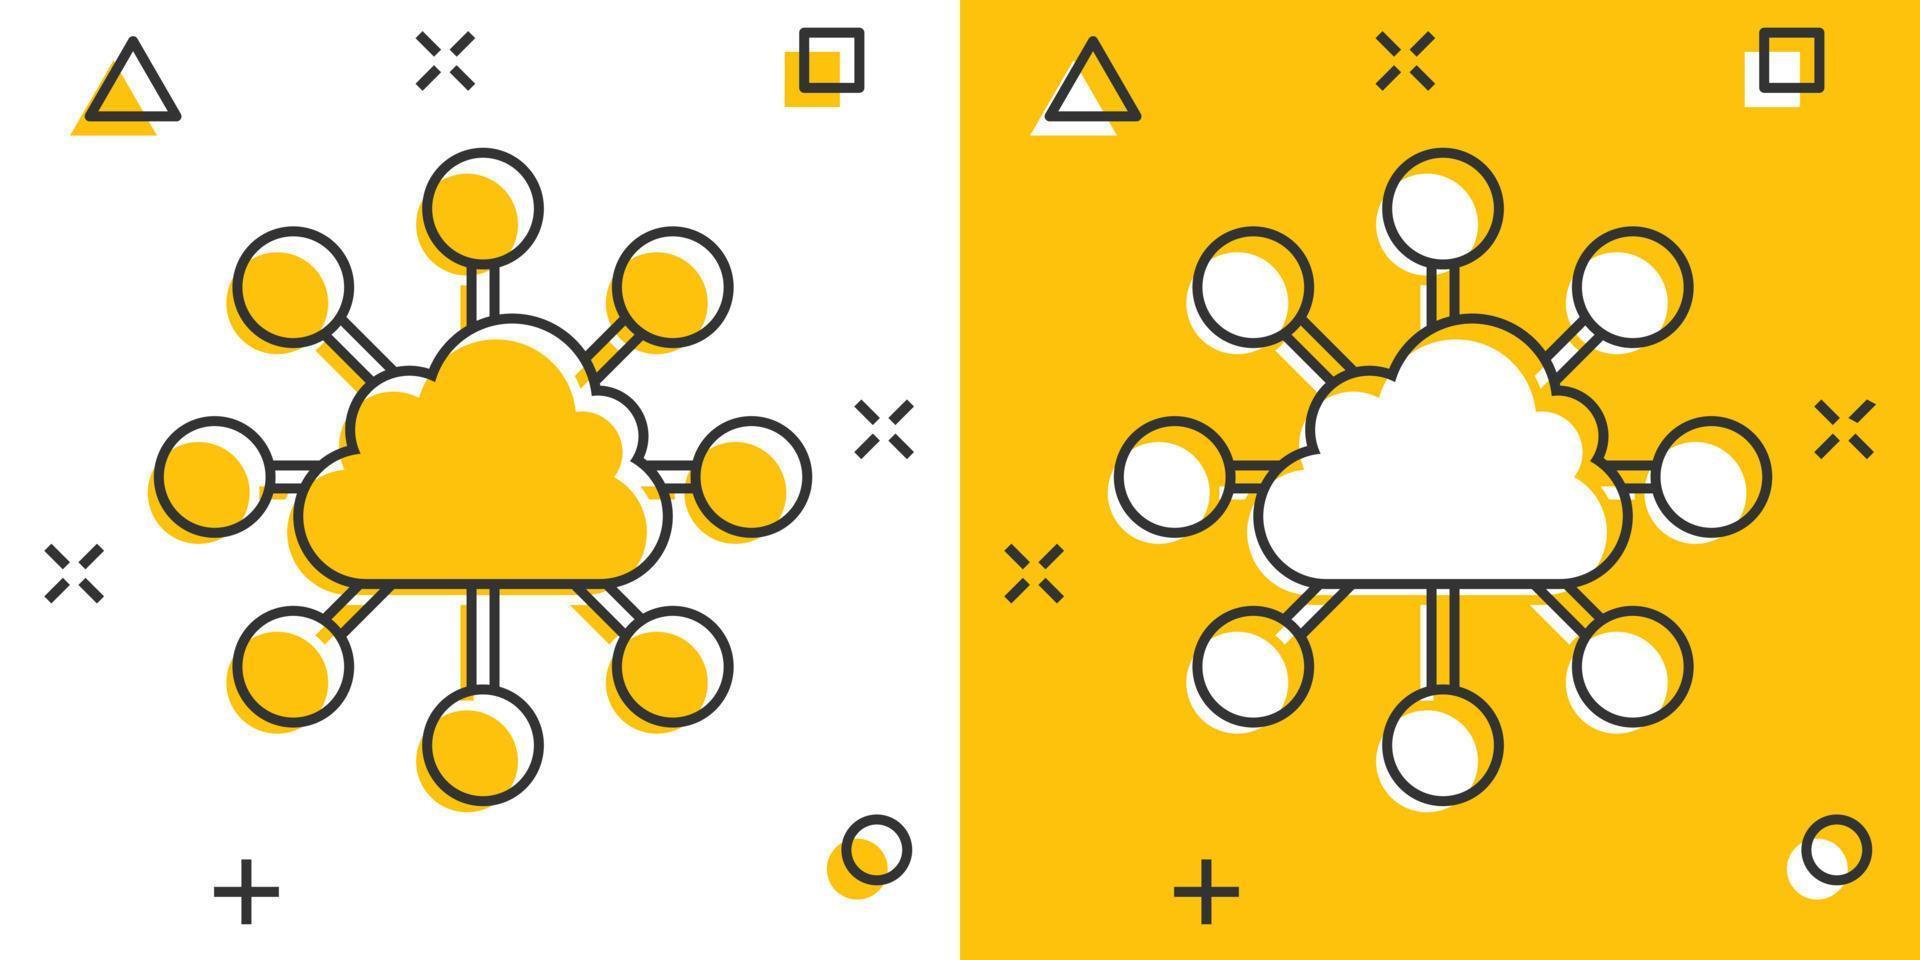 vetor ícone da tecnologia de computação em nuvem dos desenhos animados em estilo cômico. pictograma de ilustração de análise de infográfico. conceito de efeito de respingo de negócios de rede.